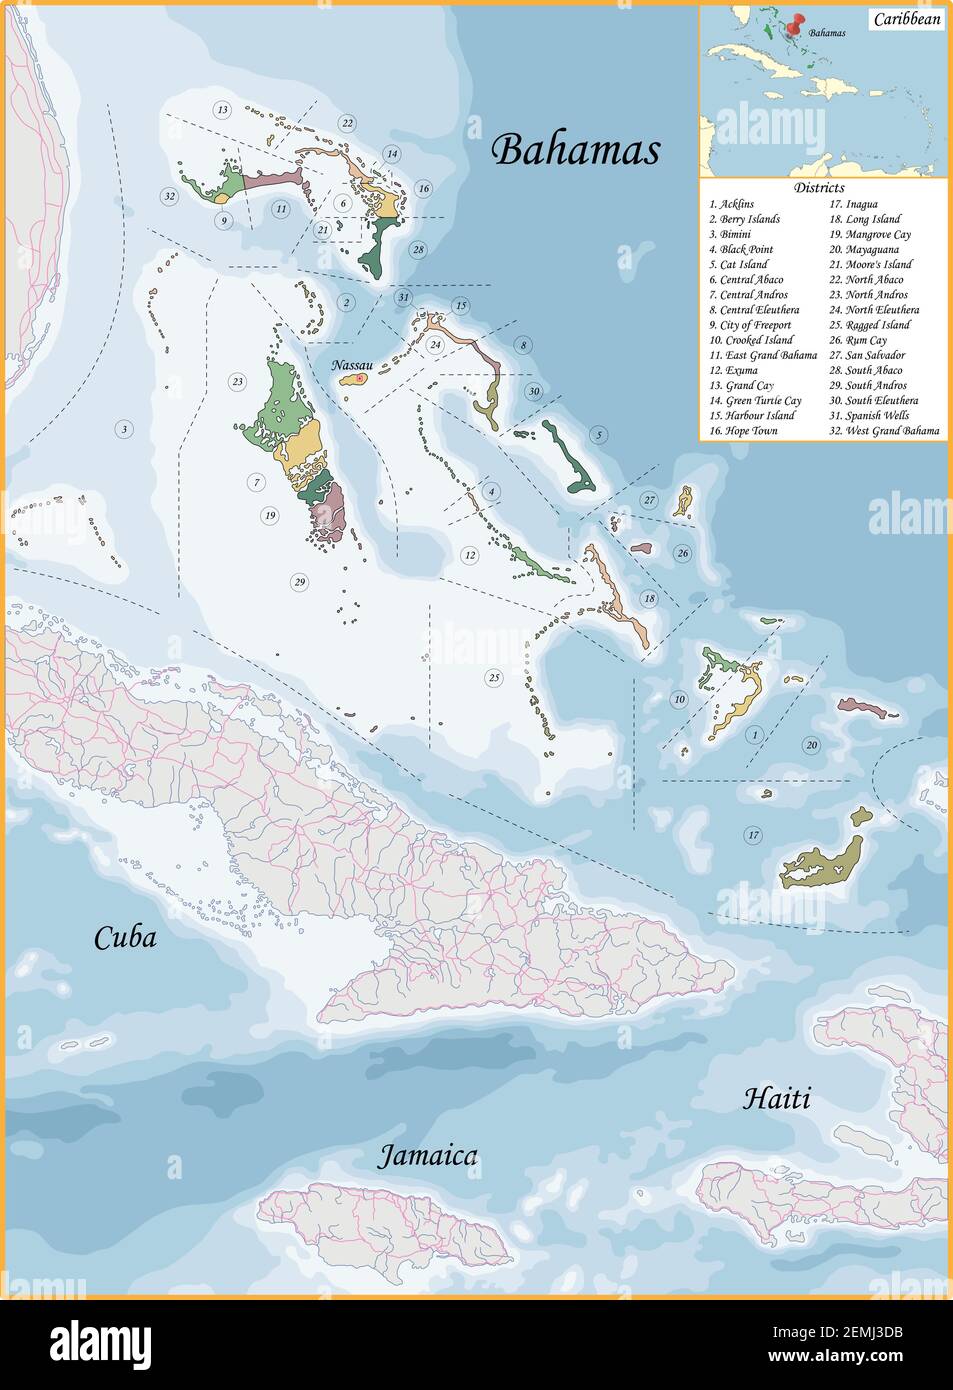 La carte des Bahamas a été dessinée avec un niveau de détail et de précision élevé Illustration de Vecteur